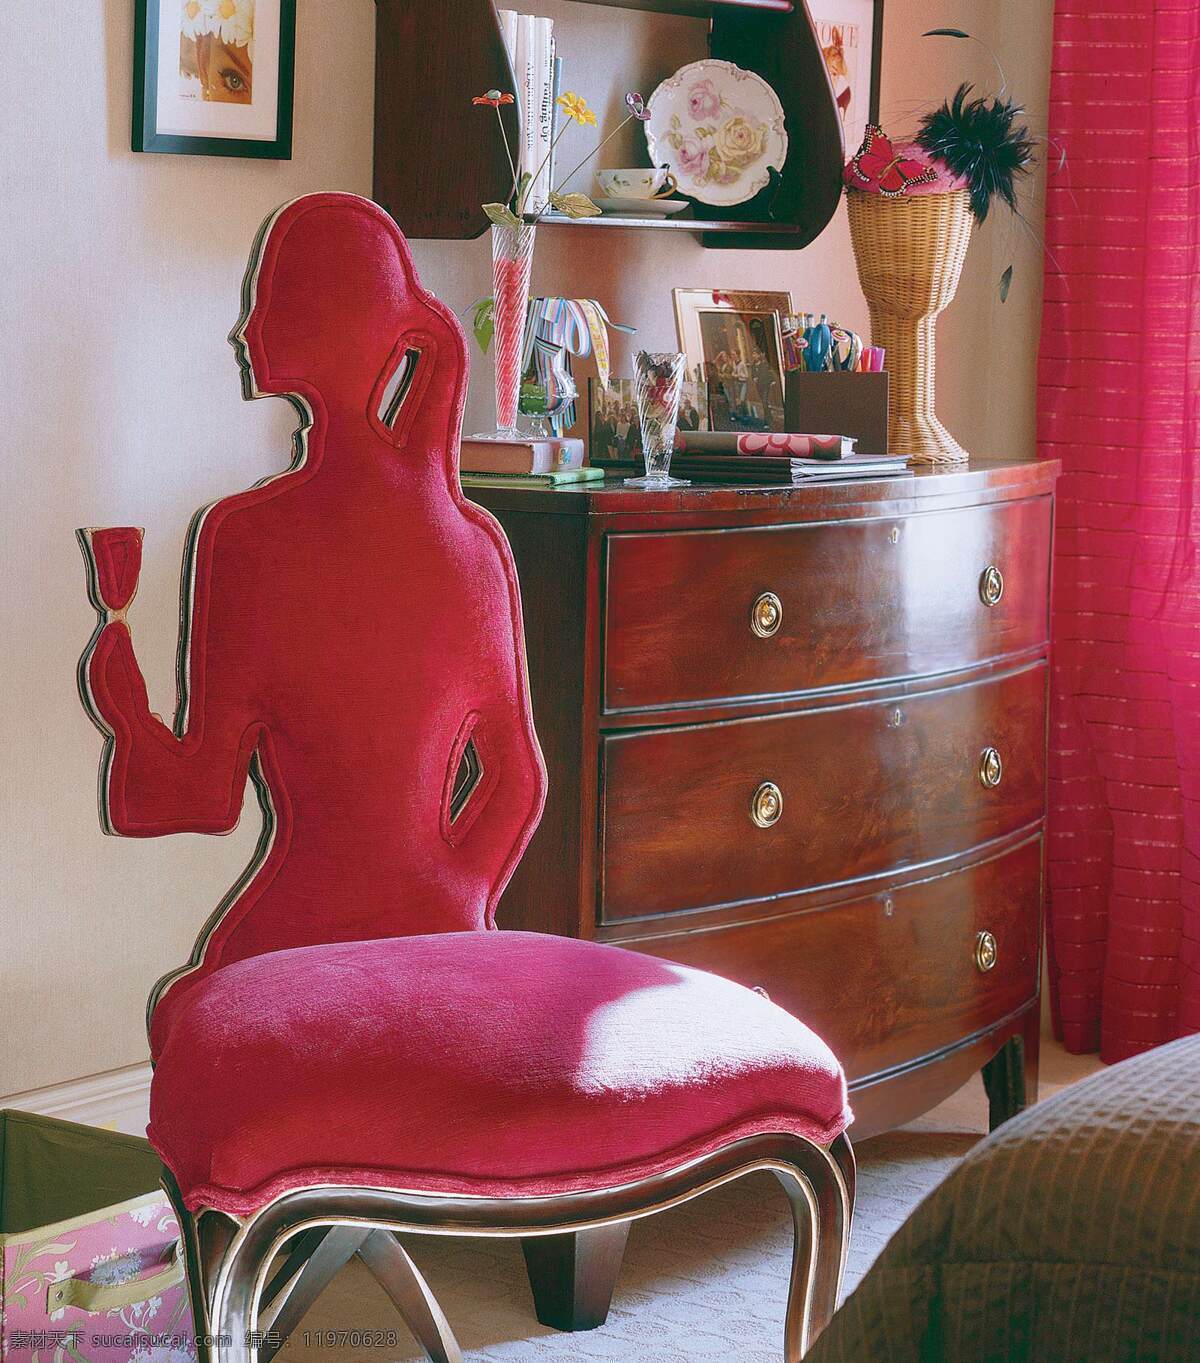 现代 风 室内设计 卧室 效果图 床 家具 人形椅子 室内背景 收纳柜 现代风 装饰画